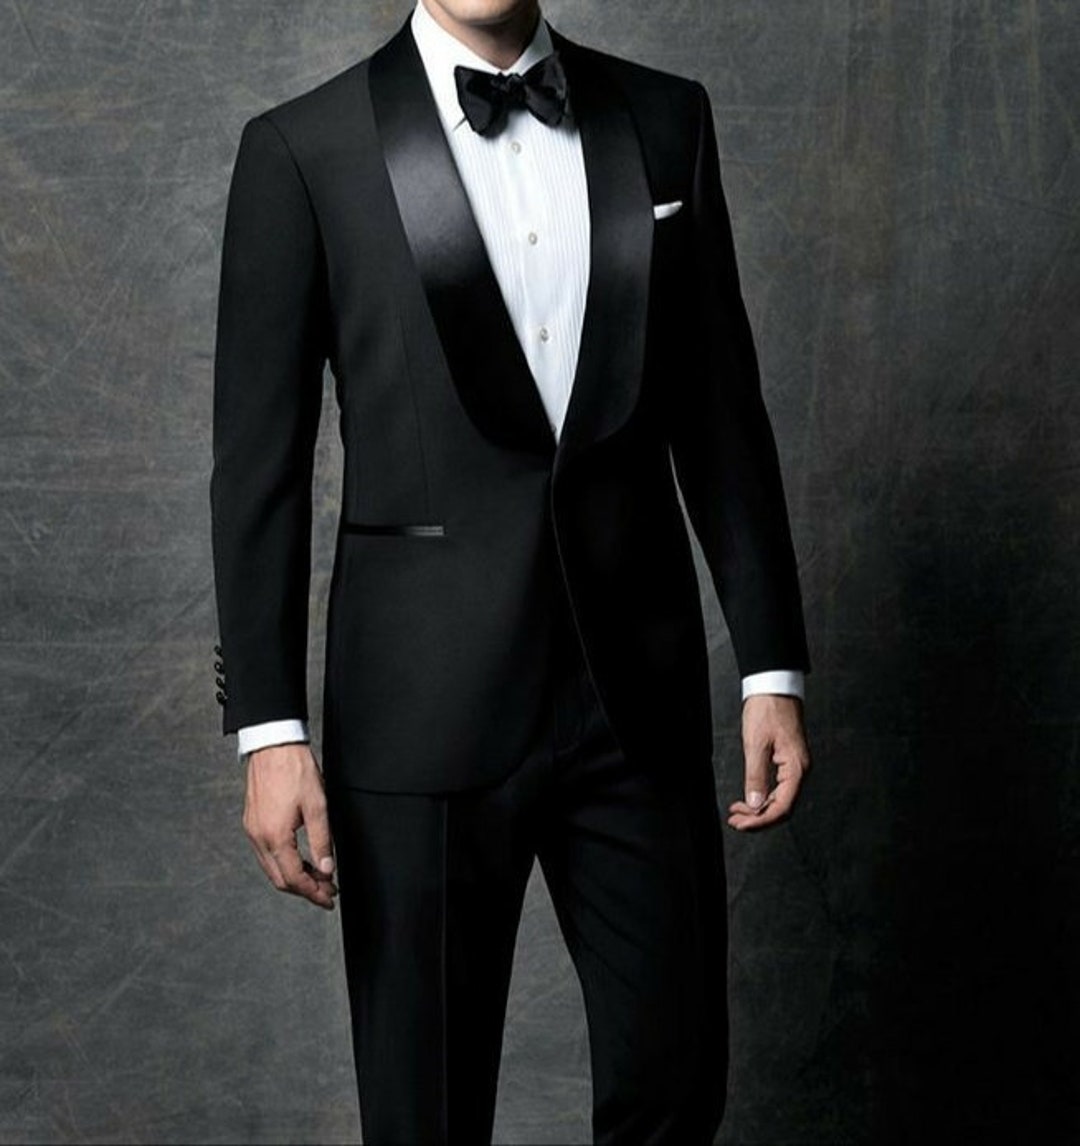 Men Suit Black Tuxedo Suit 2 Piece Stylish Suit Wedding Wear - Etsy ...